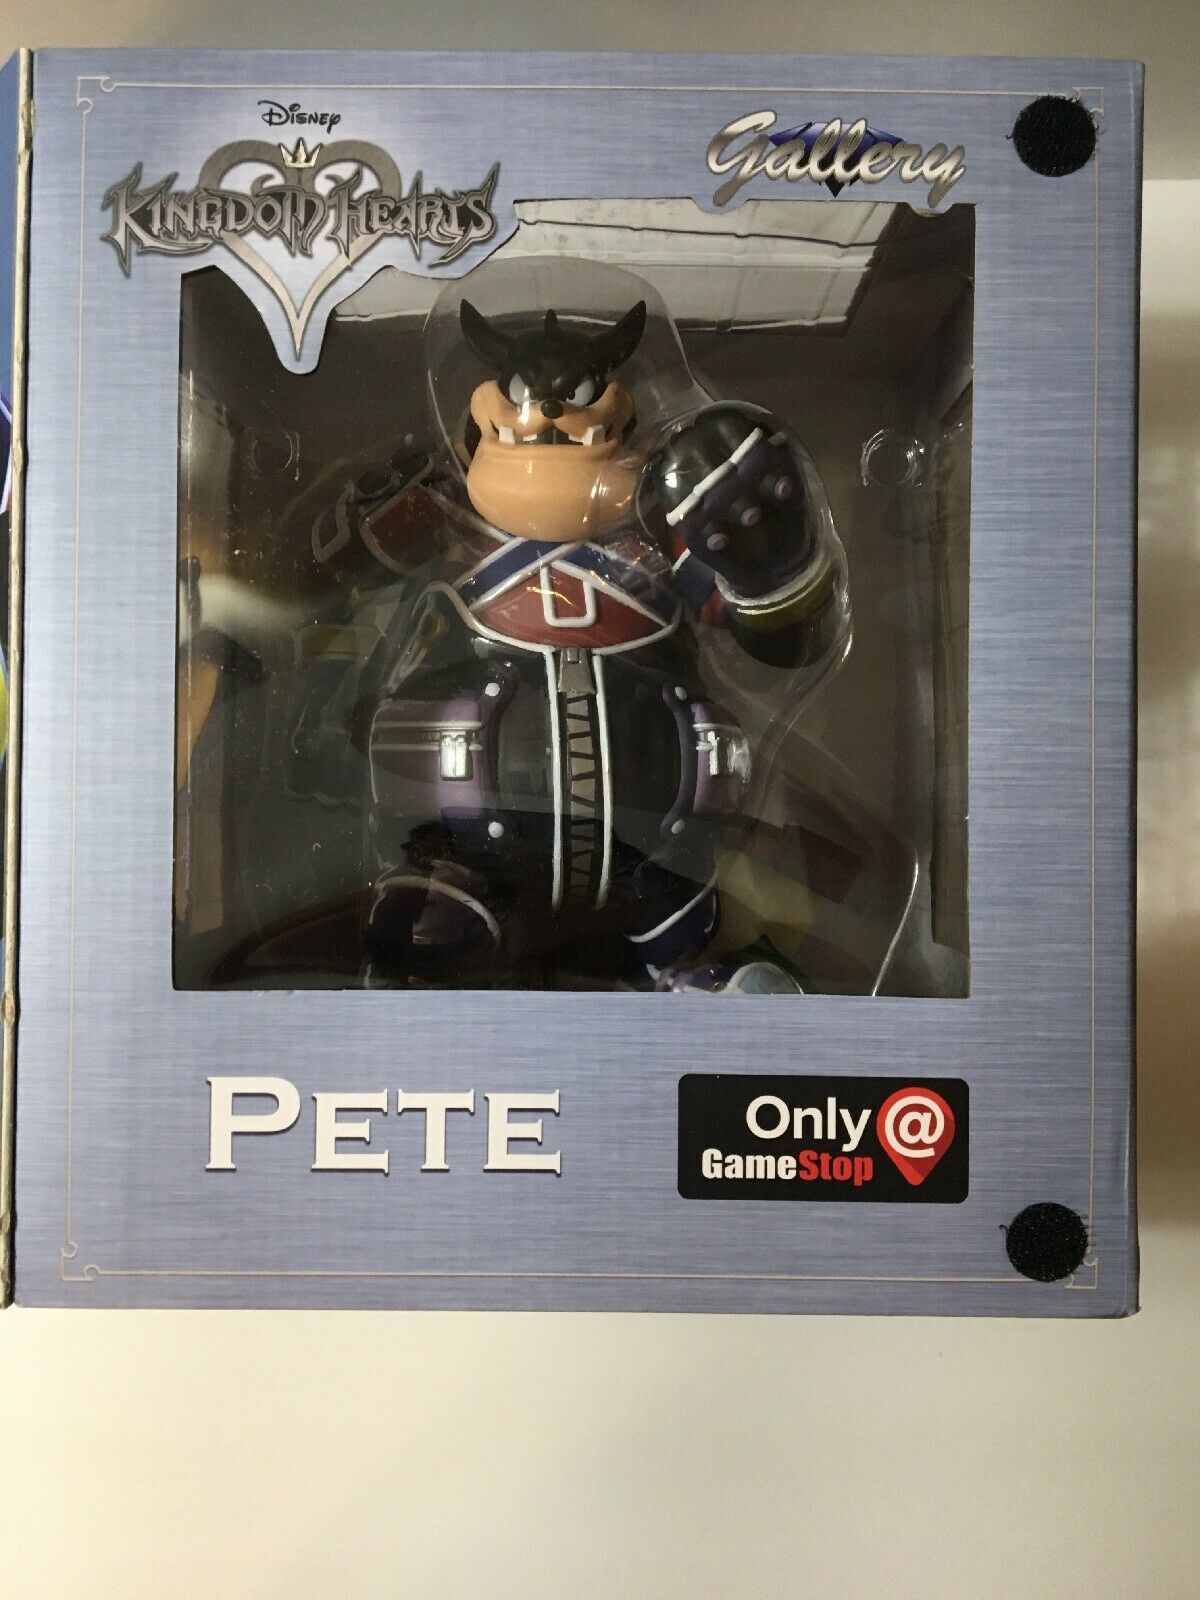 Disney Kingdom Hearts Gallery Gamestop Exclusive Pete Statue Diamond Select - $31.50